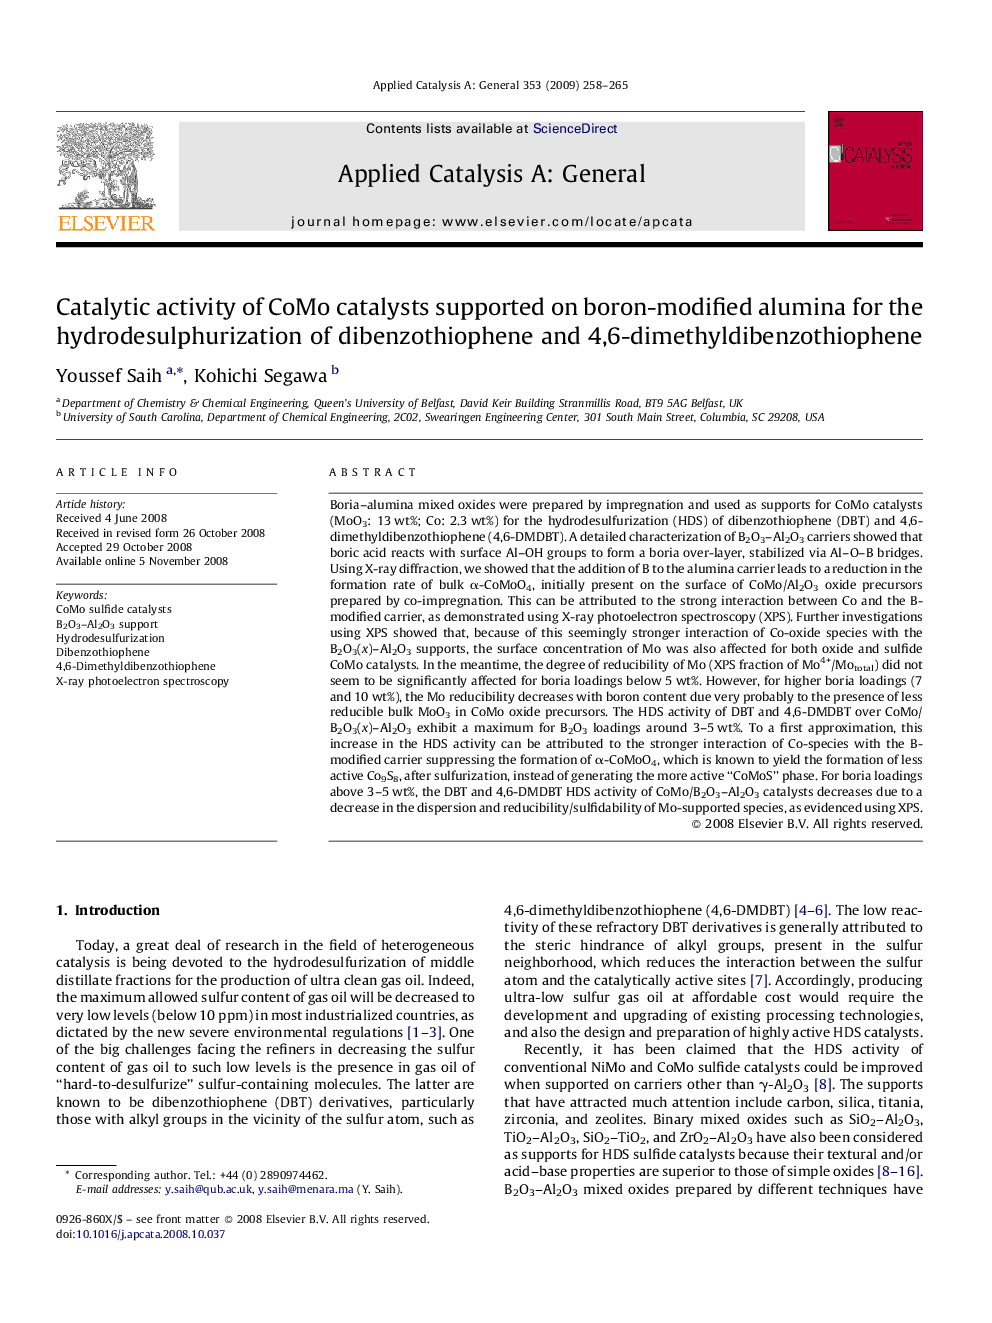 Catalytic activity of CoMo catalysts supported on boron-modified alumina for the hydrodesulphurization of dibenzothiophene and 4,6-dimethyldibenzothiophene